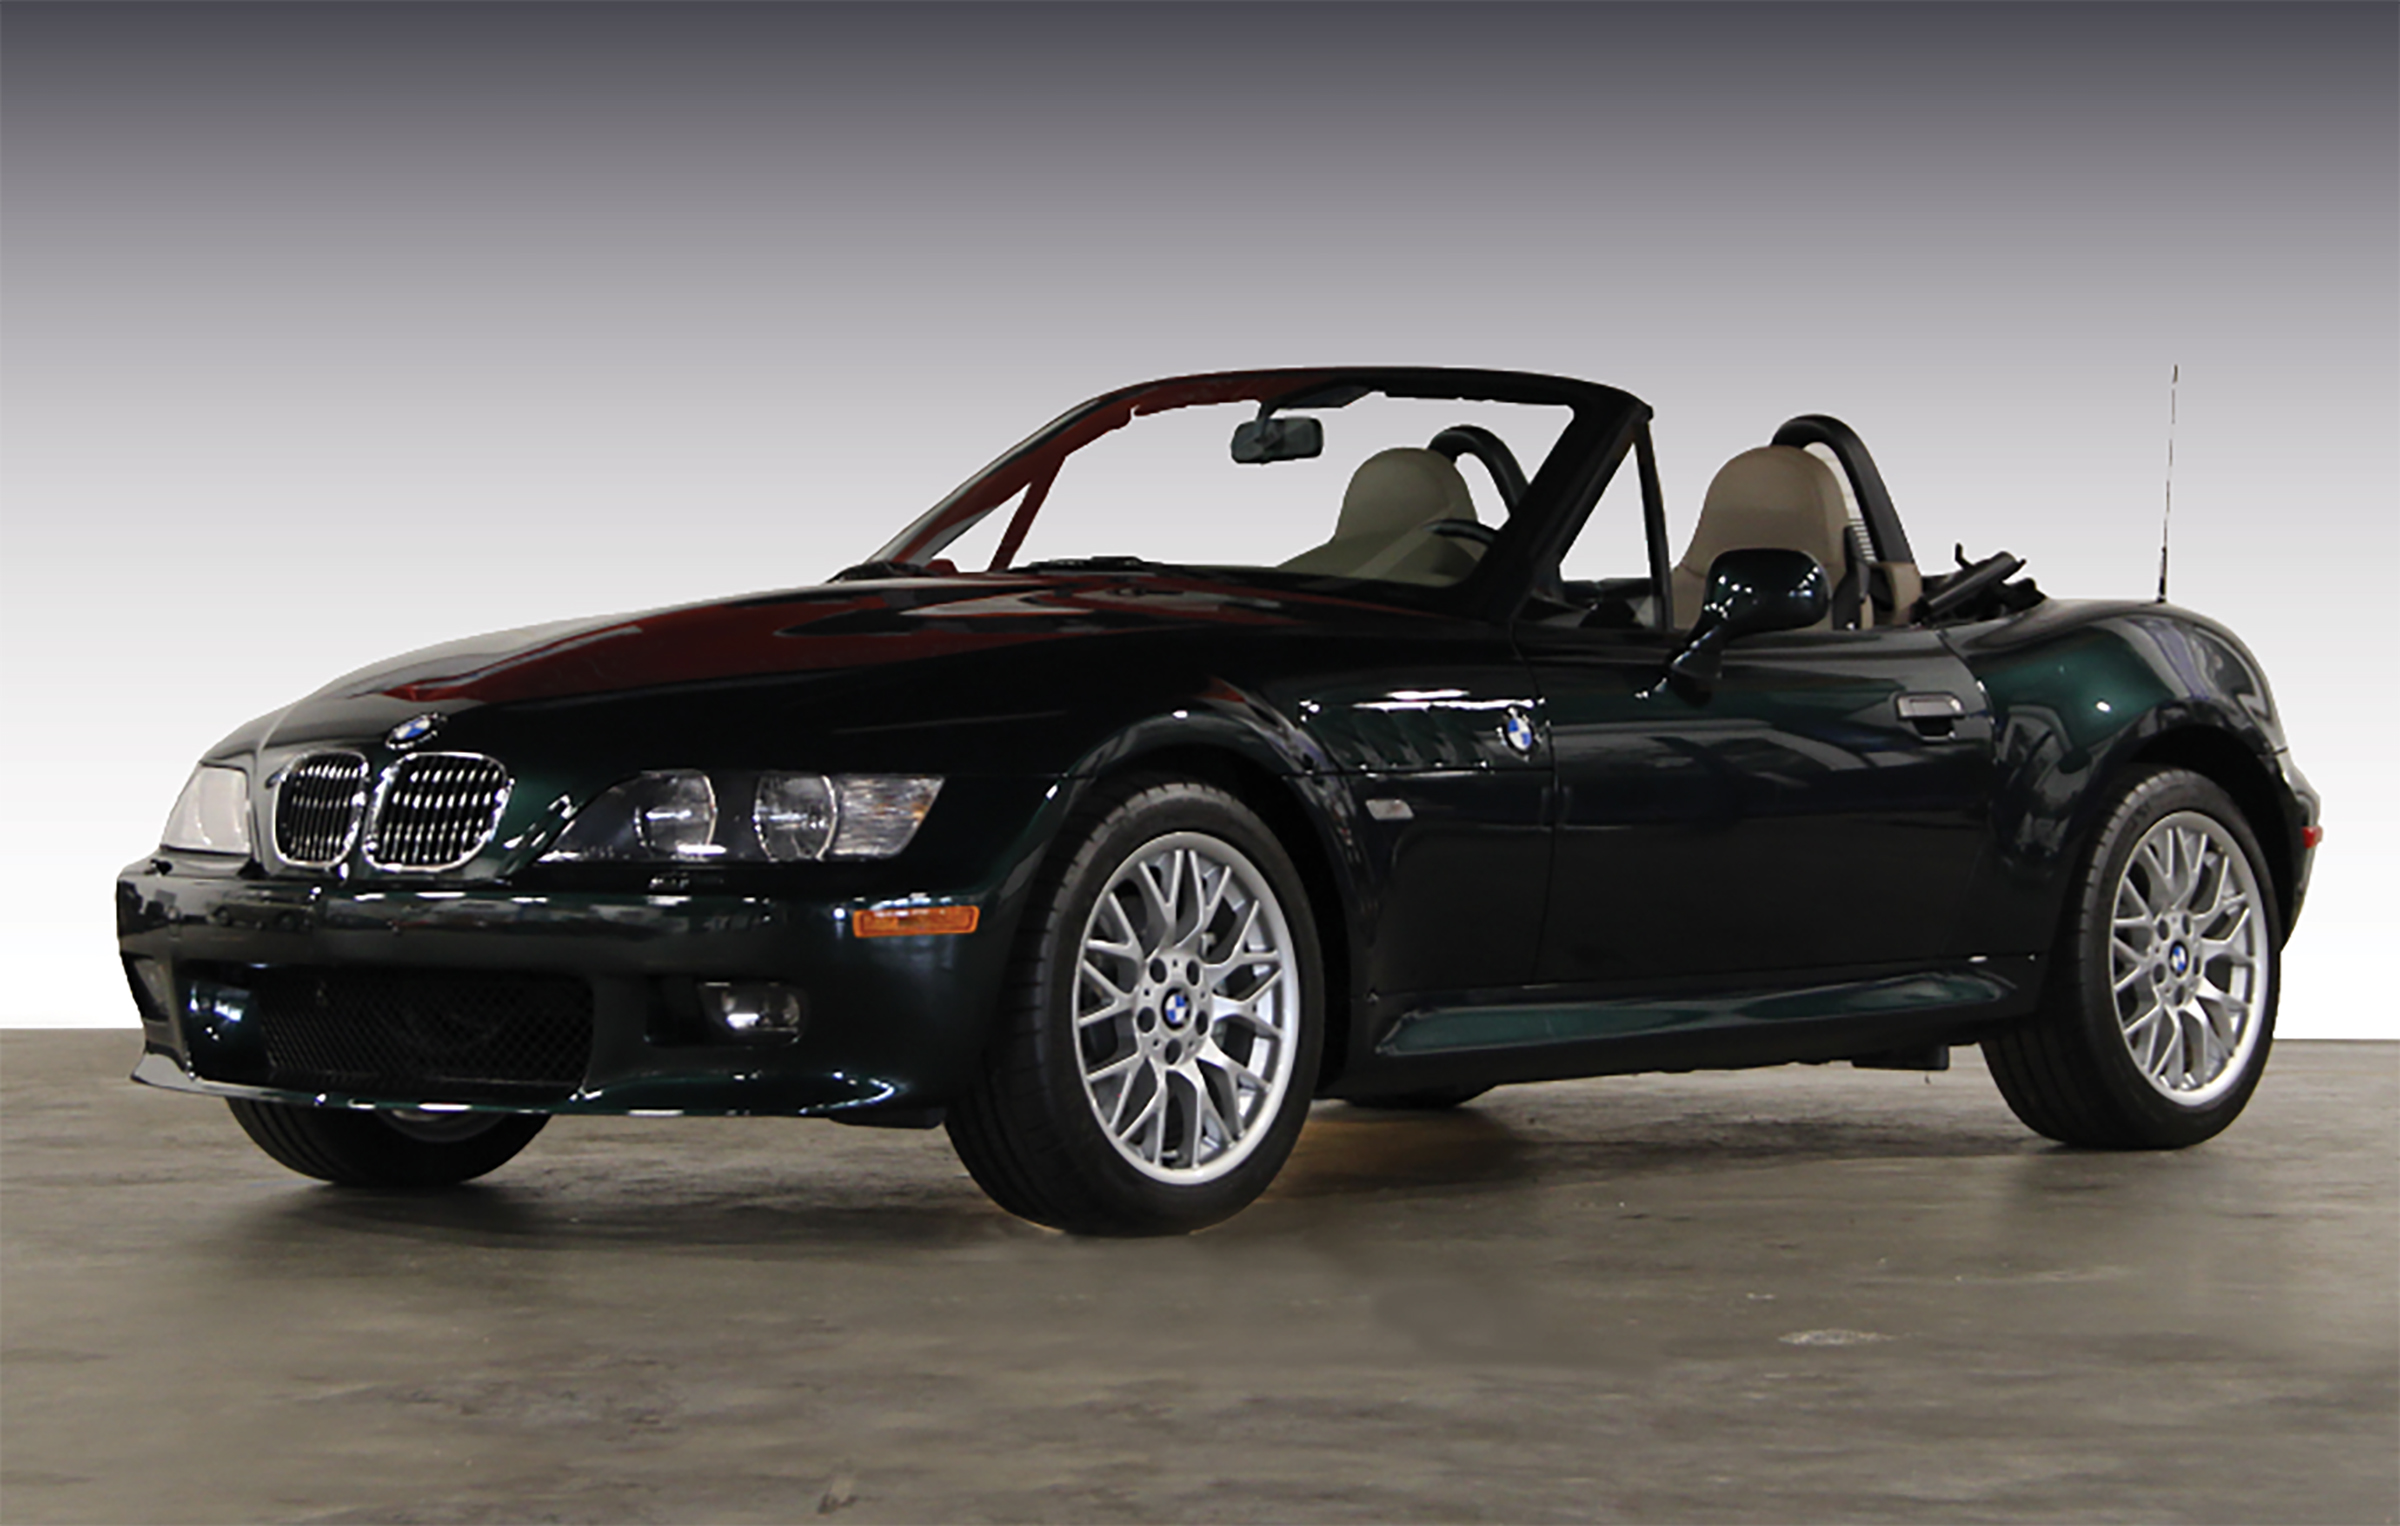 2001 Z3: BMW of North America – BMW Car Club of America Foundation